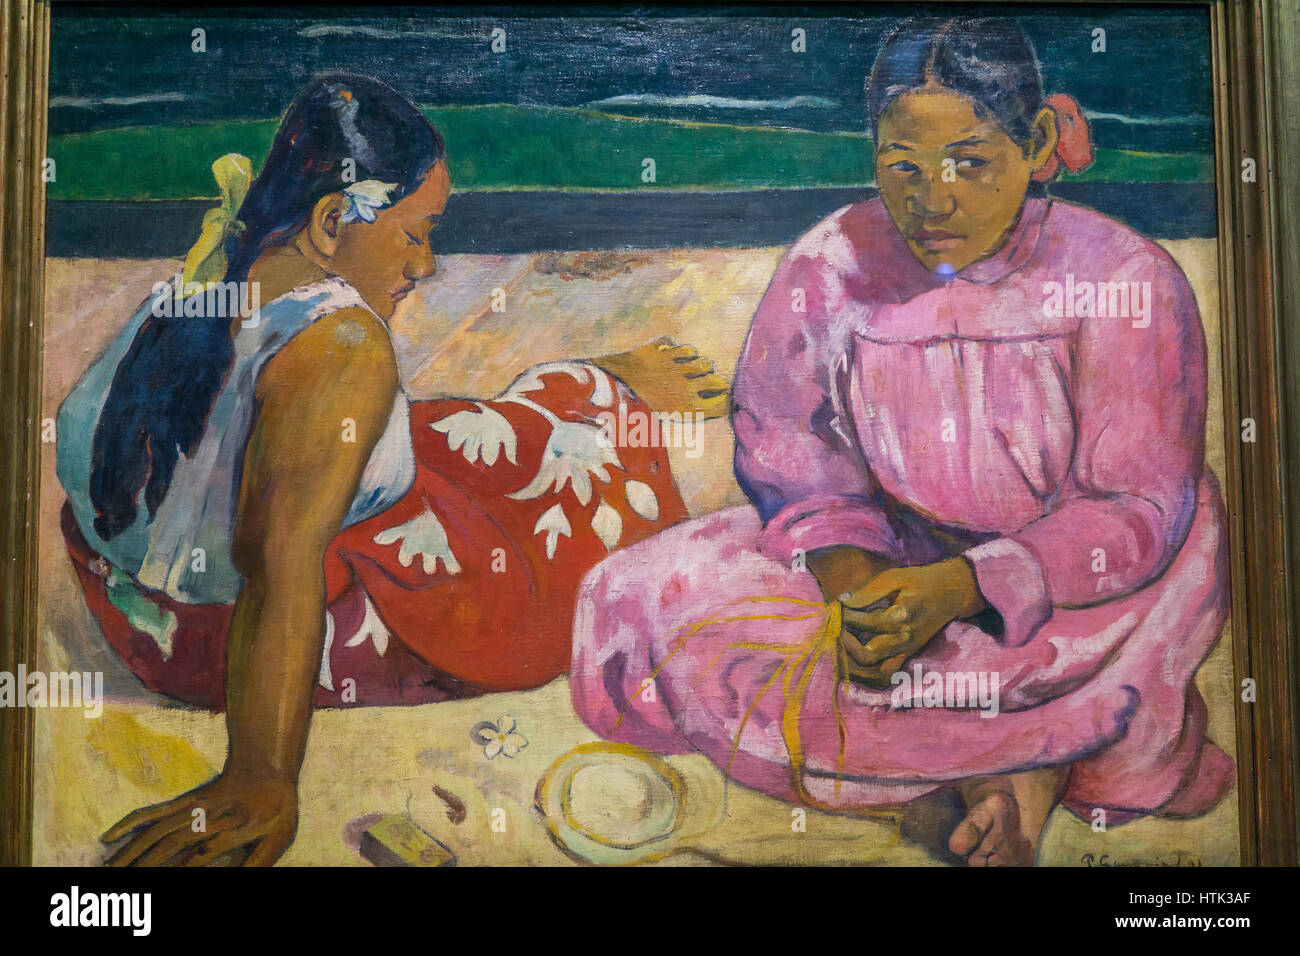 La peinture impressionniste au Musee d'Orsay,Paul Gauguin, Paris, France. Banque D'Images